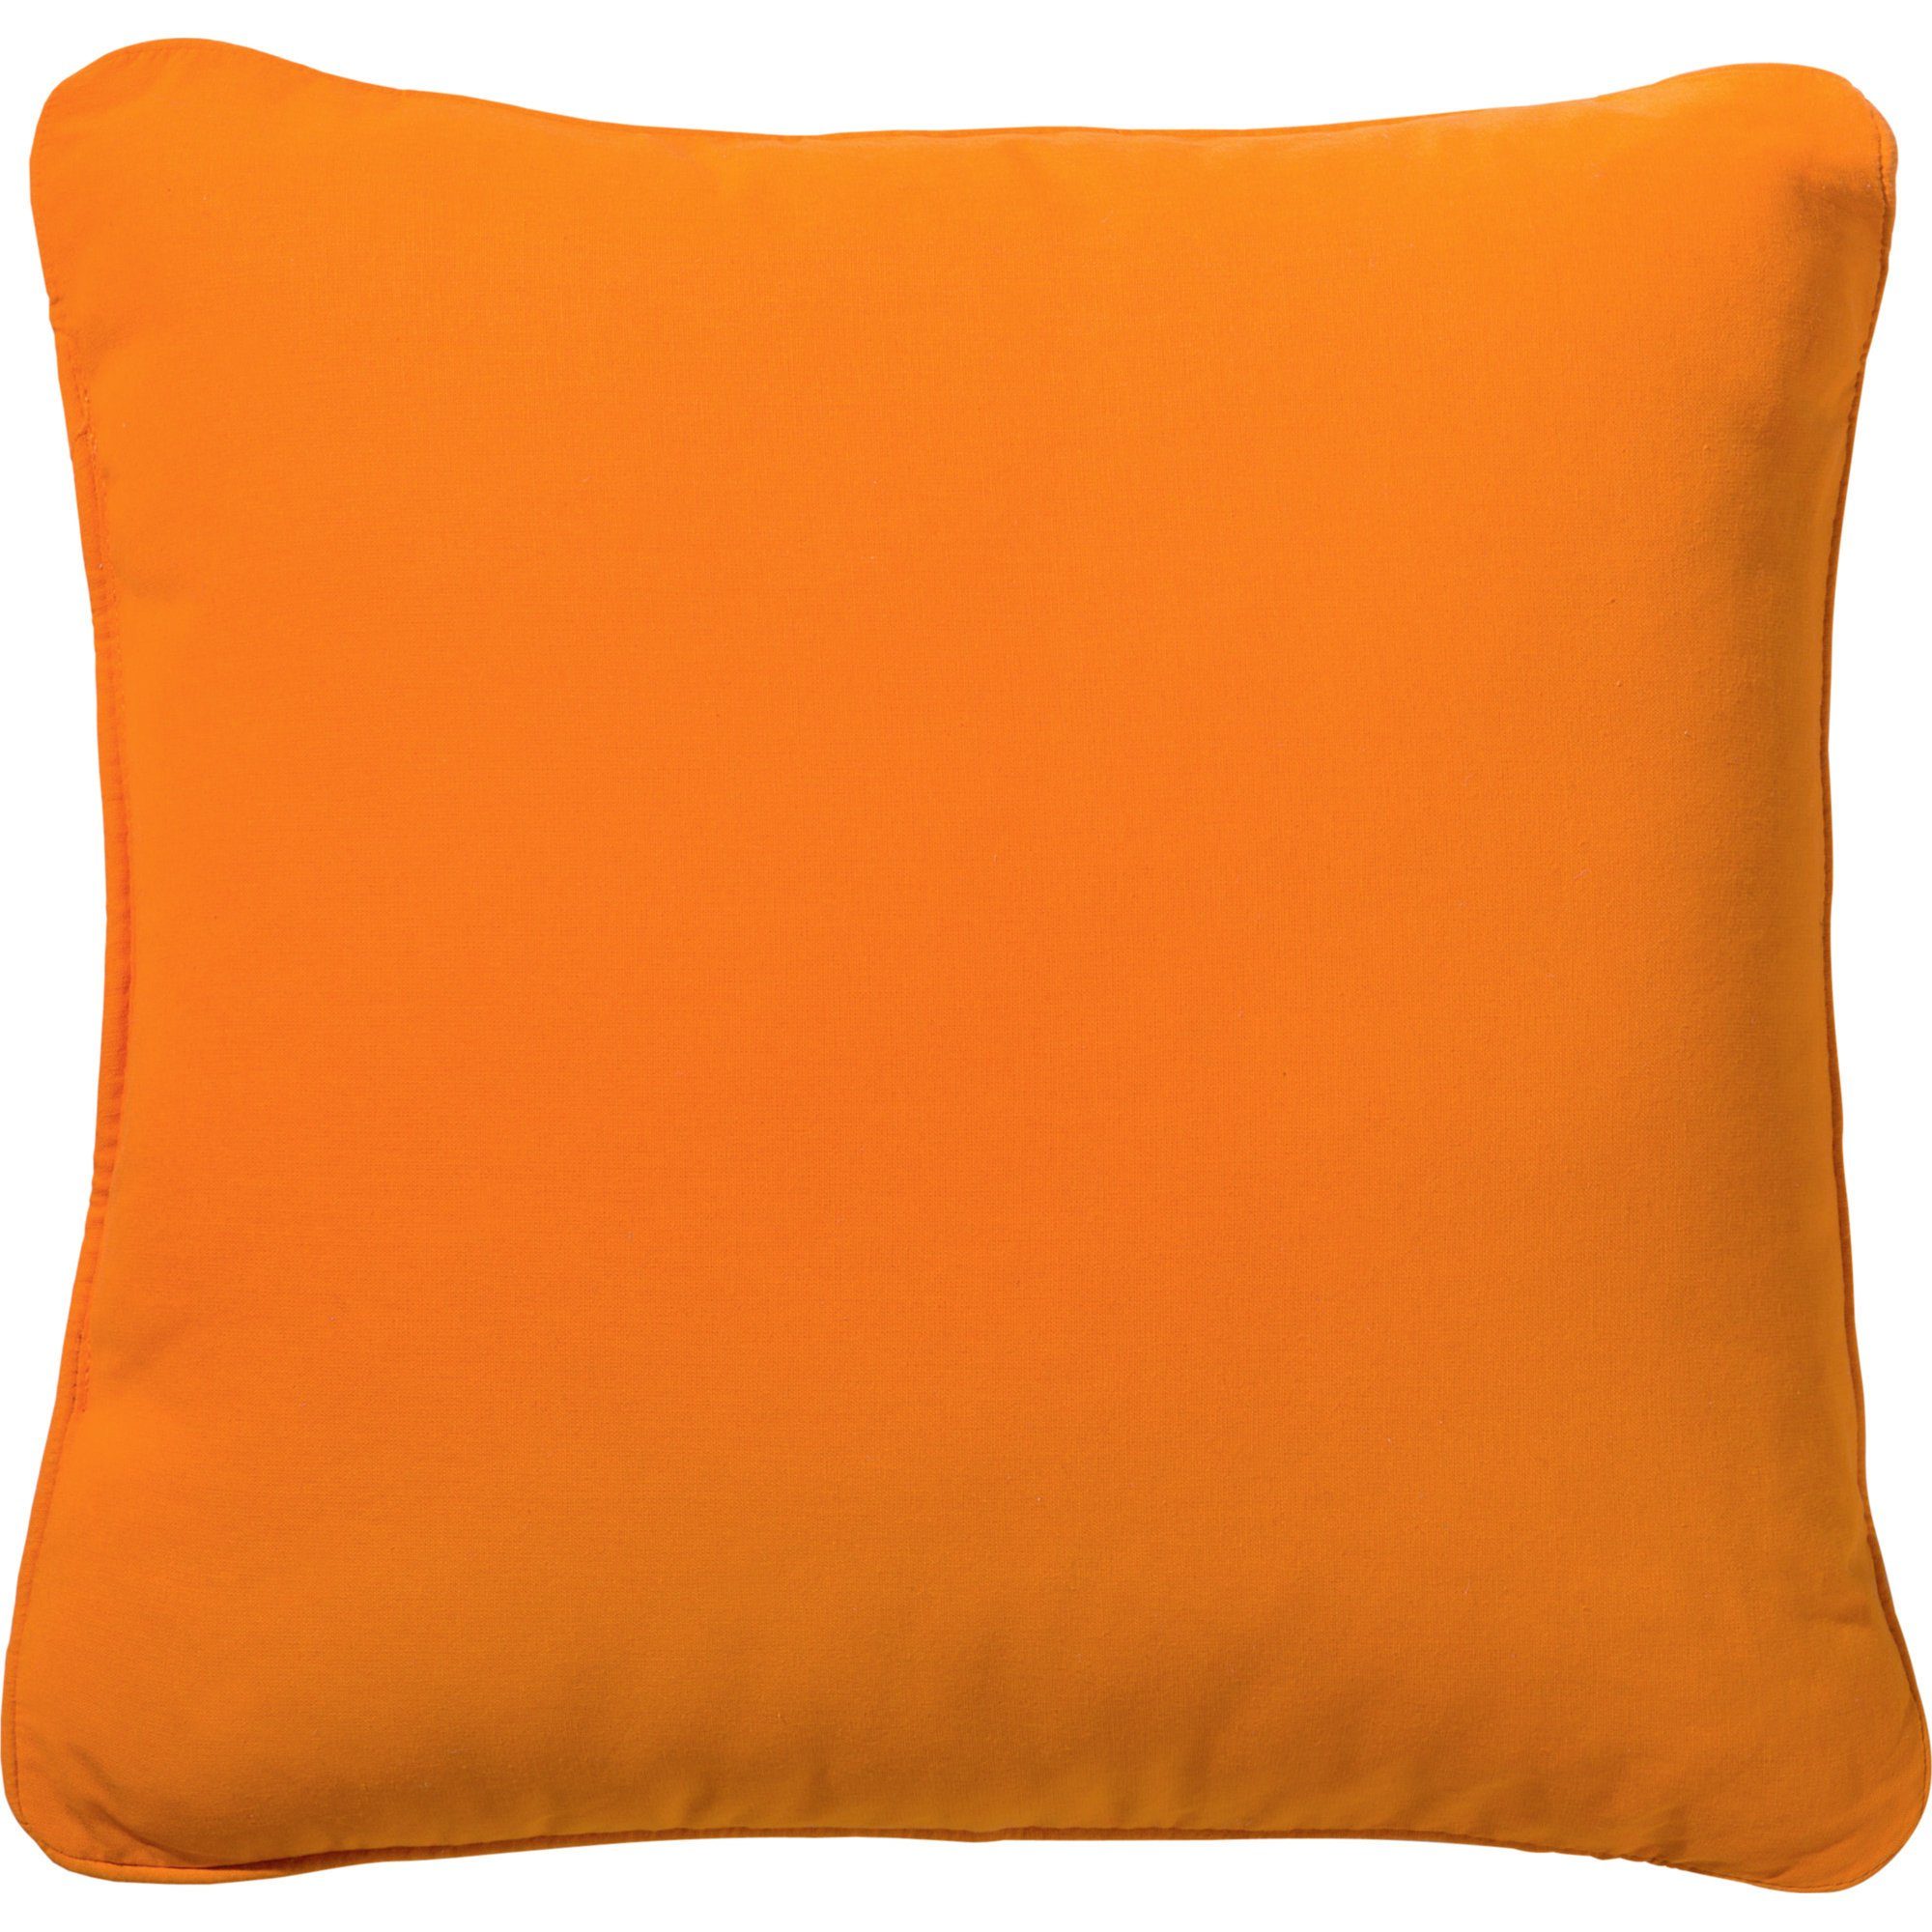 Baumwolle orange Uni REDBEST gefüllt, Kissen Dekokissen